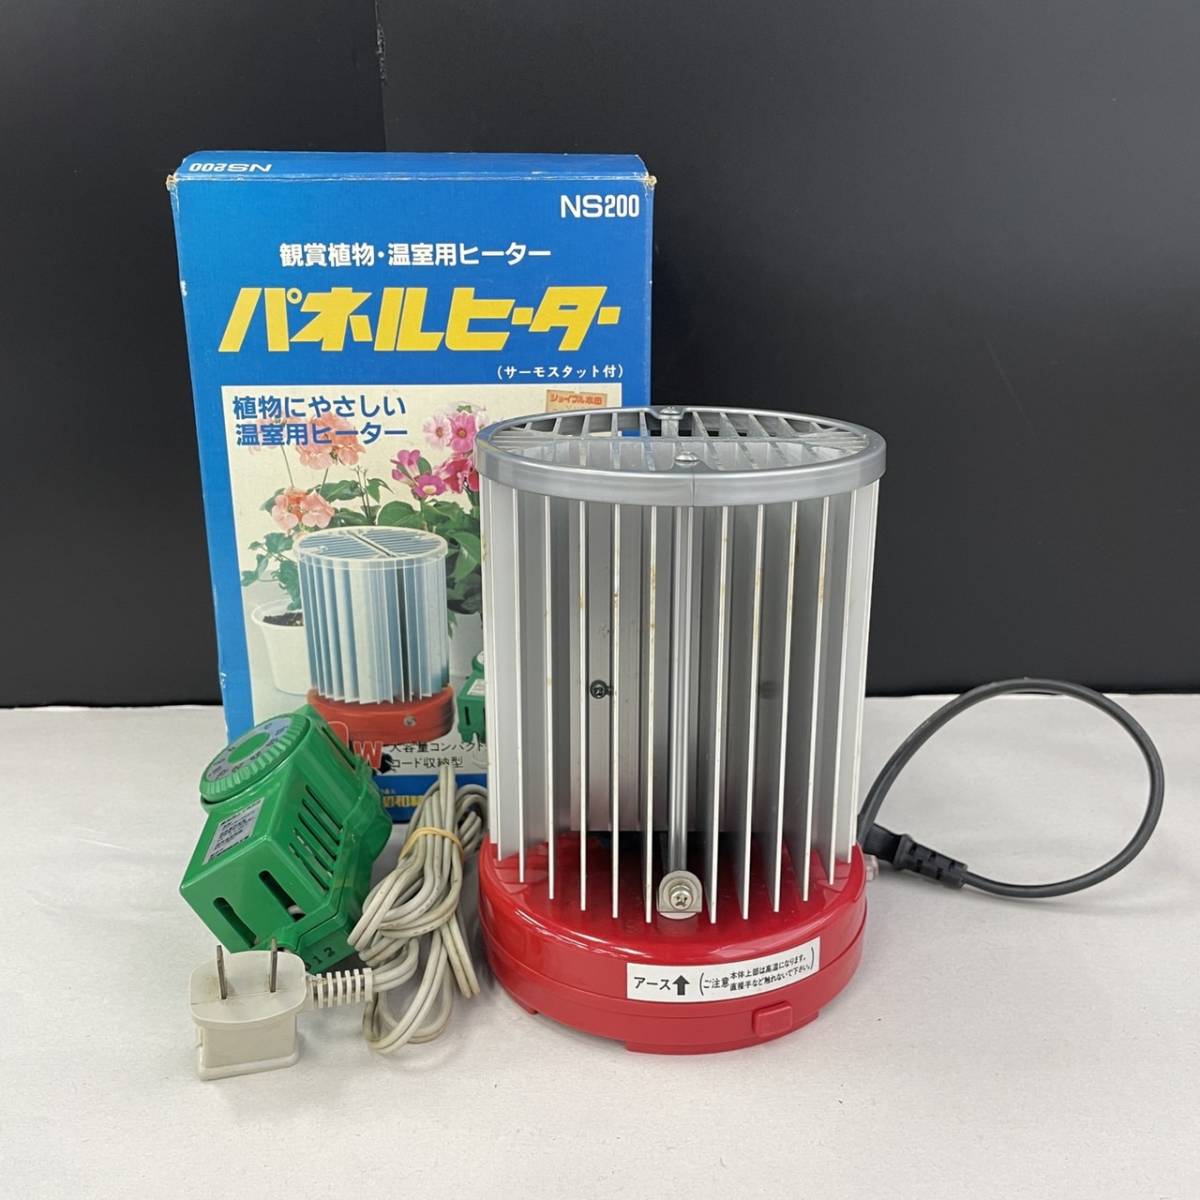 昭和精機工業 パネルヒーター 植物 温室 - 空調